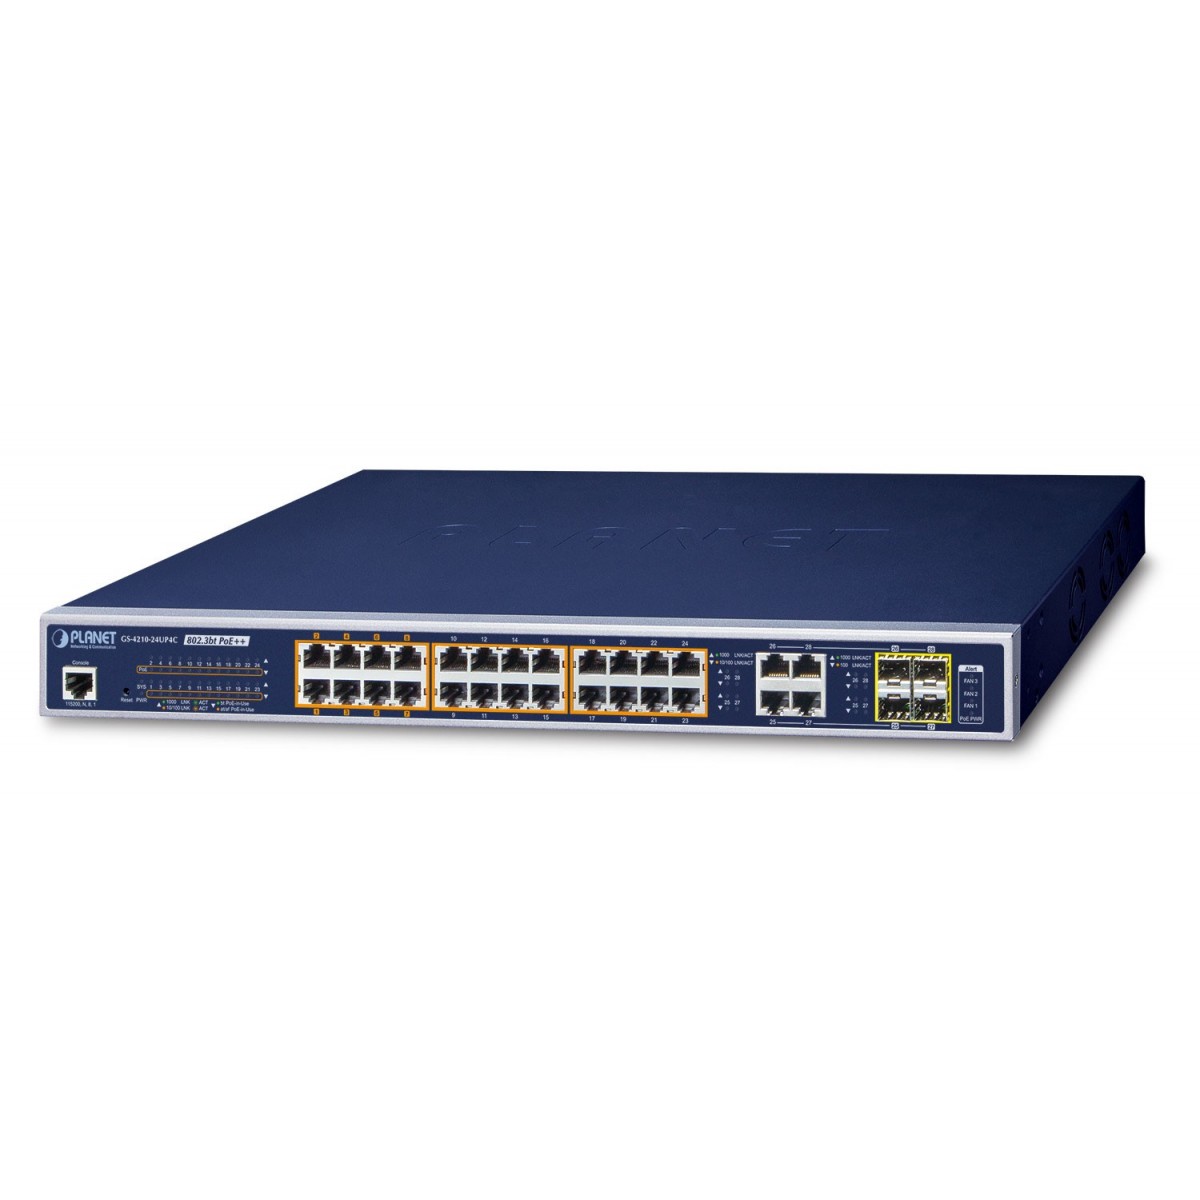 Planet GS-4210-24UP4C - Managed - L2/L4 - Gigabit Ethernet (10/100/1000) - Power over Ethernet (PoE) - Rack mounting - 1U